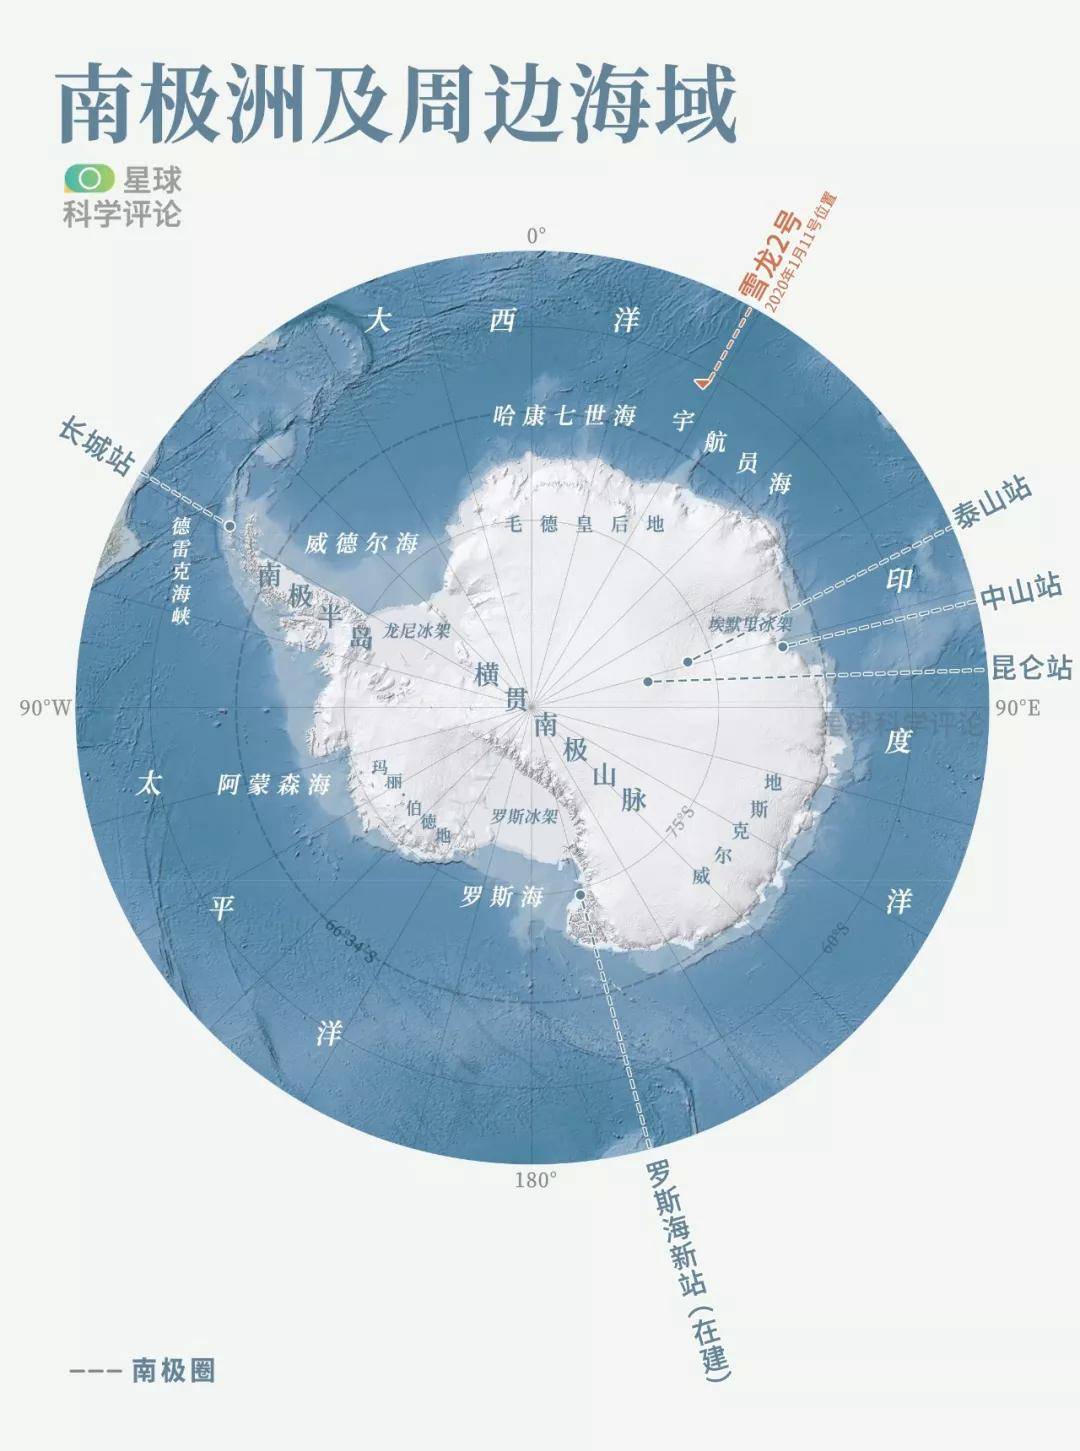 南极洲及周边海域地图   标注了中国在南极科考站的位置和当前雪龙2号